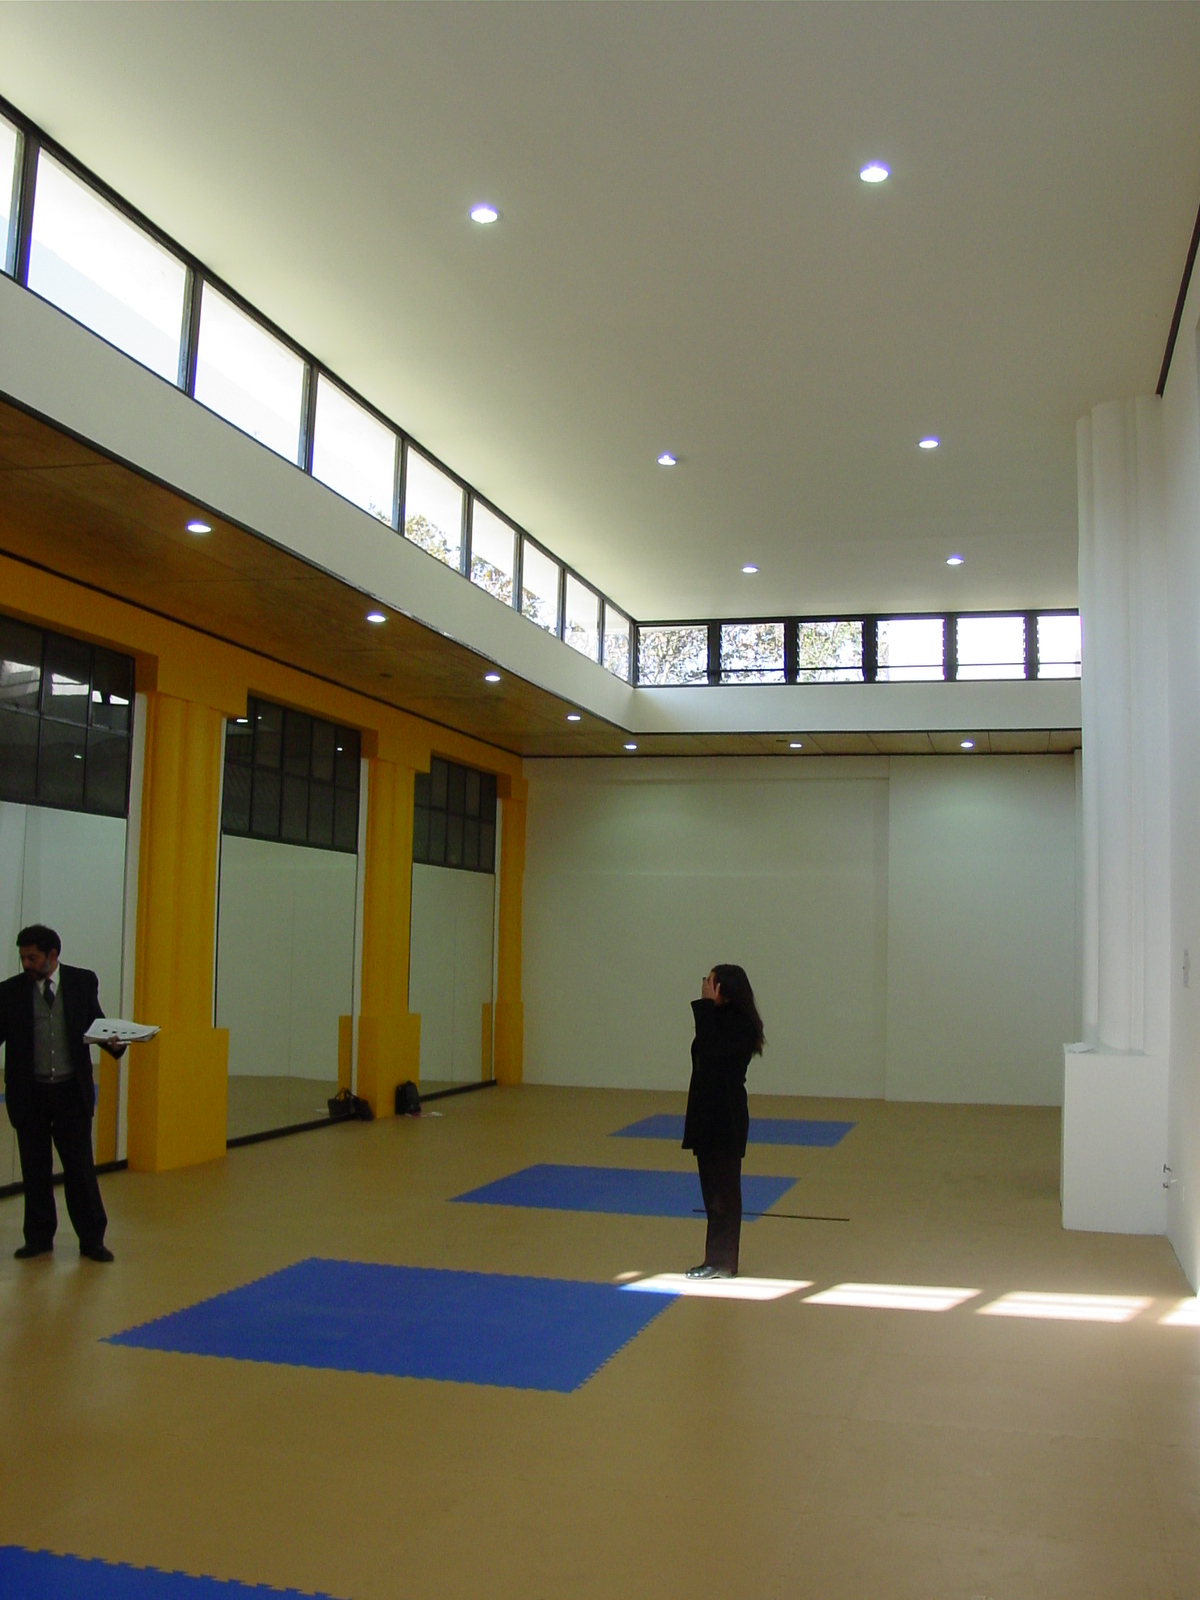  Sala de Máquinas para Acondicionamiento Físico Piscina Escolar Universidad de Chile 6